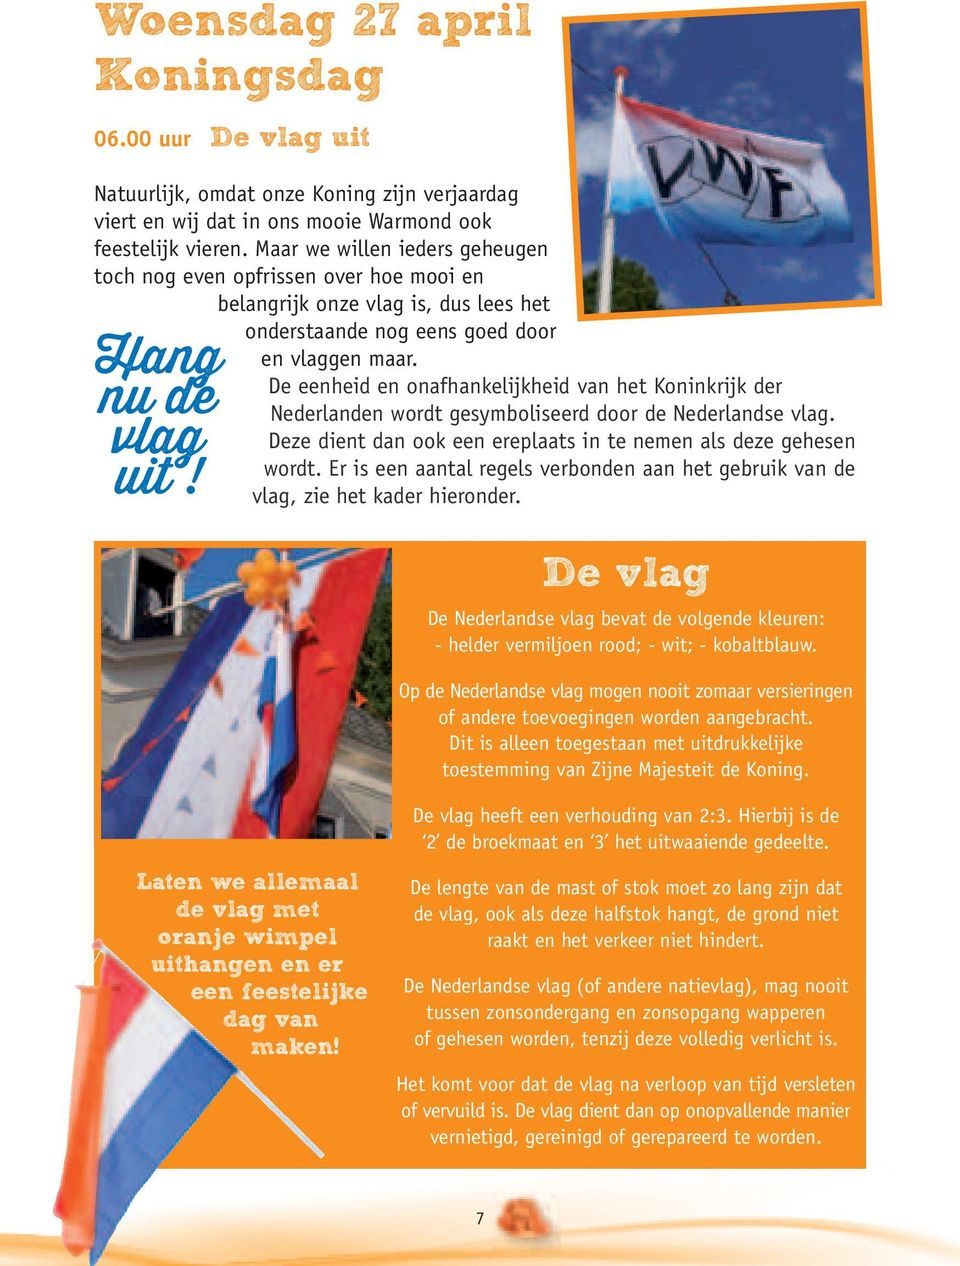 De eenheid en onafhankelijkheid van het Koninkrijk der Nederlanden wordt gesymboliseerd door de Nederlandse vlag. Deze dient dan ook een ereplaats in te nemen als deze gehesen wordt.